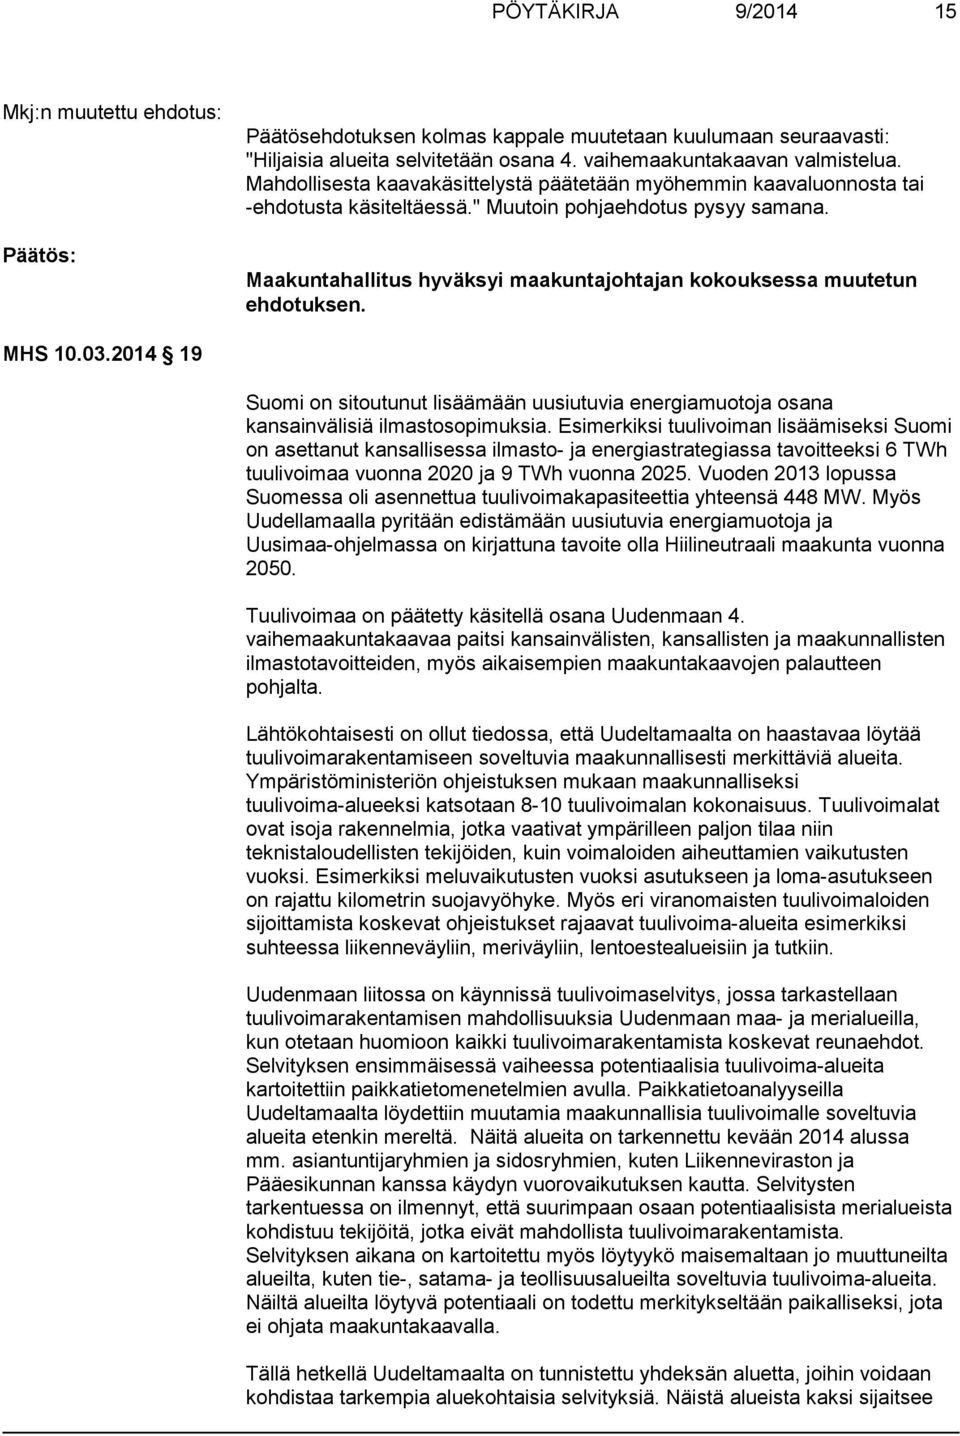 Maakuntahallitus hyväksyi maakuntajohtajan kokouksessa muutetun ehdotuksen. MHS 10.03.2014 19 Suomi on sitoutunut lisäämään uusiutuvia energiamuotoja osana kansainvälisiä ilmastosopimuksia.